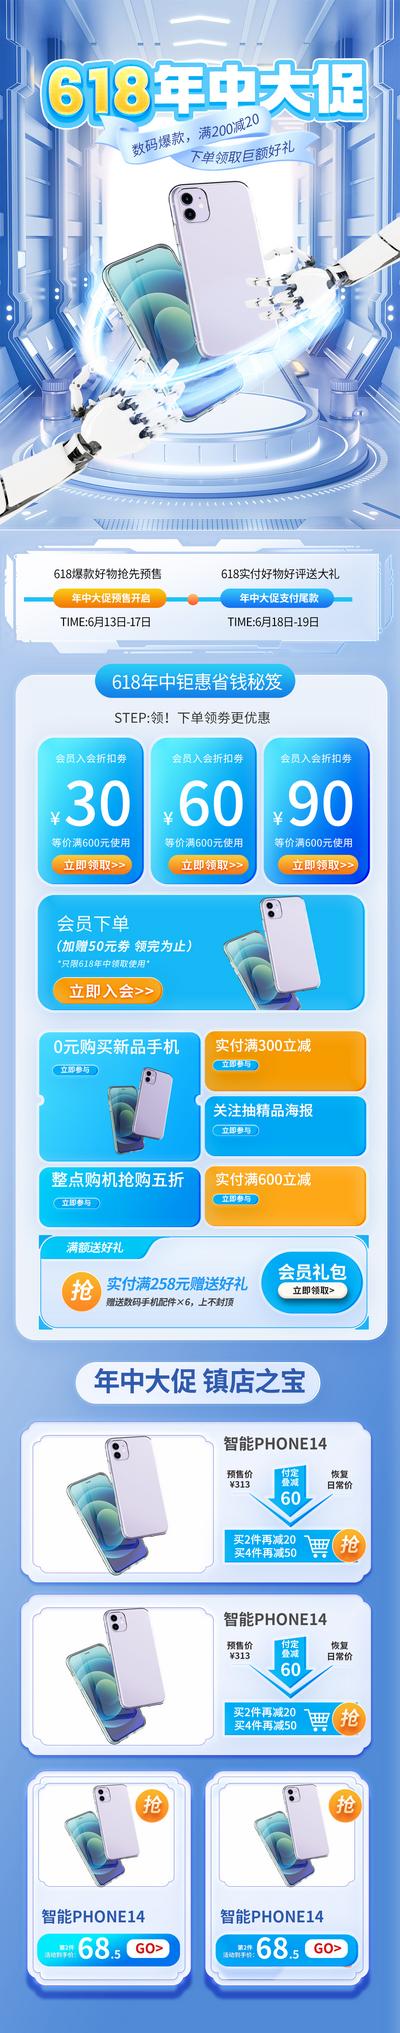 【南门网】电商 科技 促销 618 双十一 大促 数码 首页 手机 购物节 3C 专题 促销